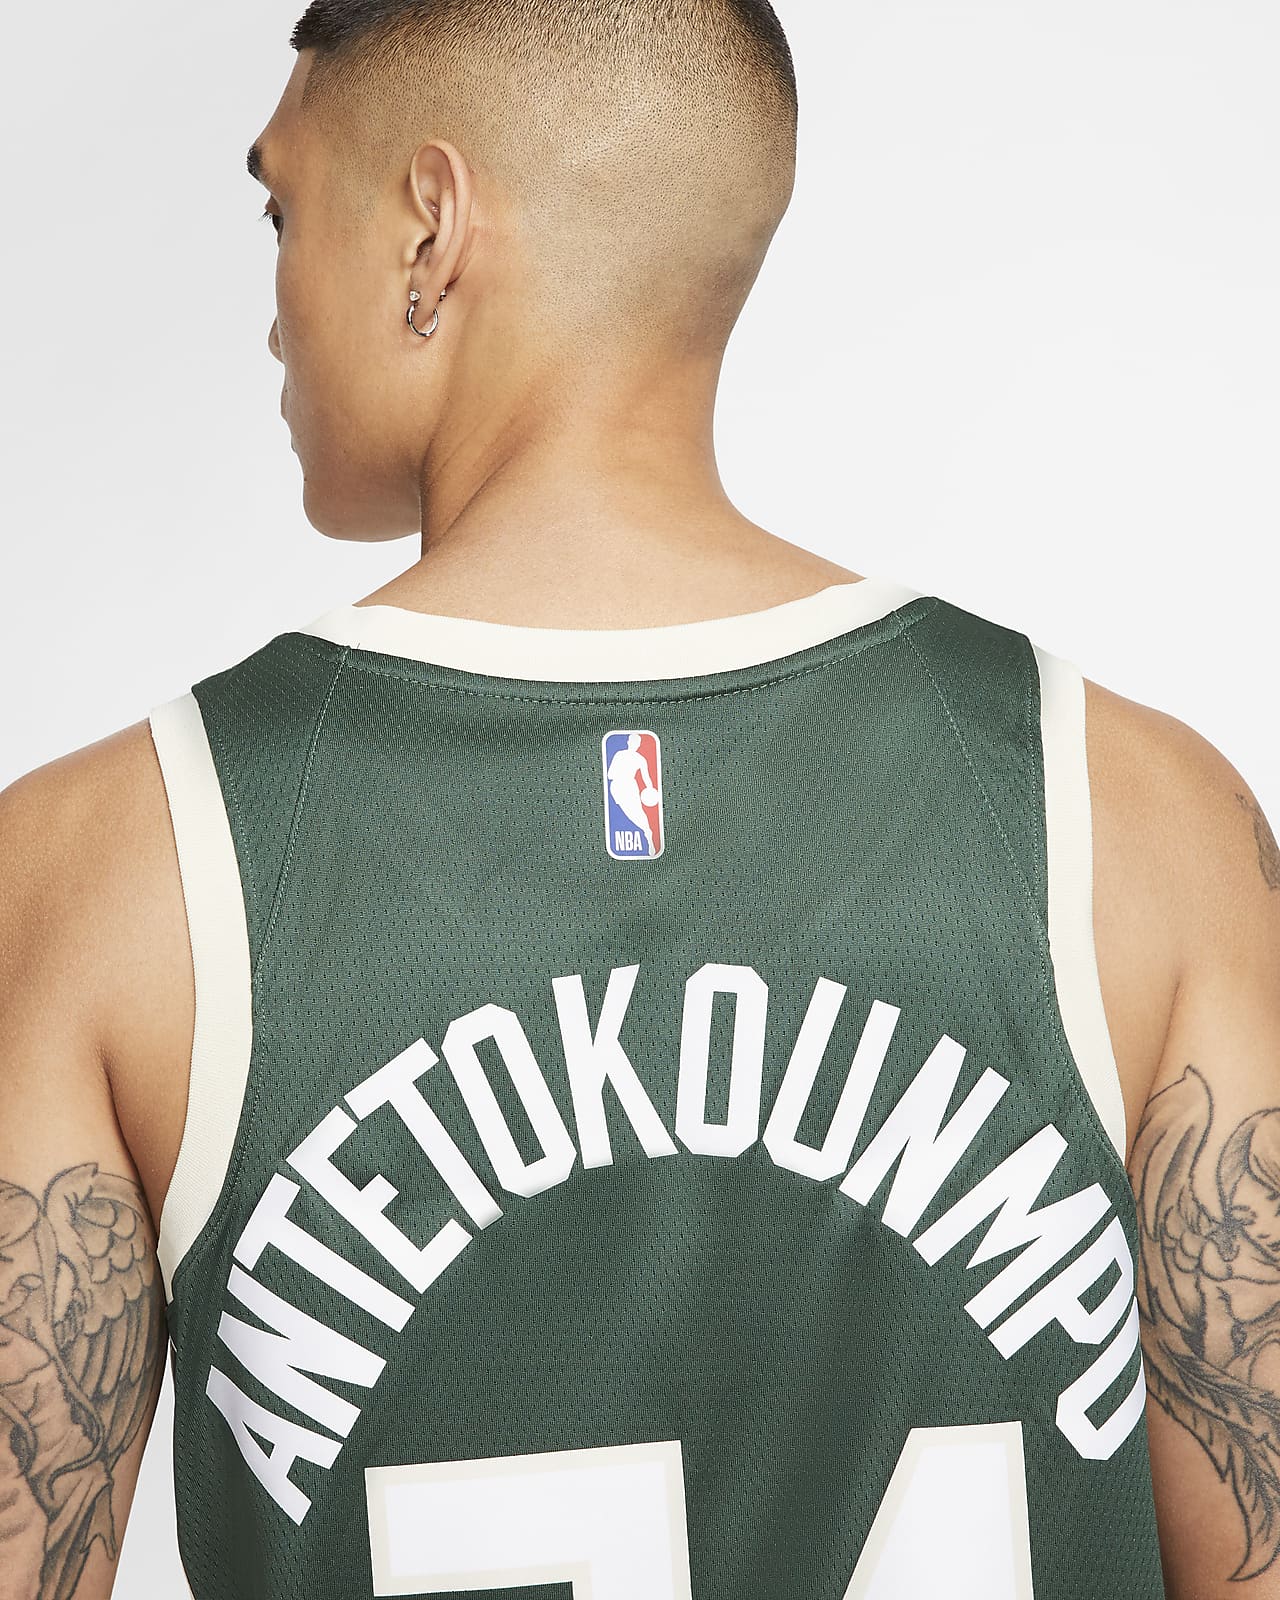 NEW Giannis Antetokounmpo Nike Milwaukee Bucks Icon Edition Jersey